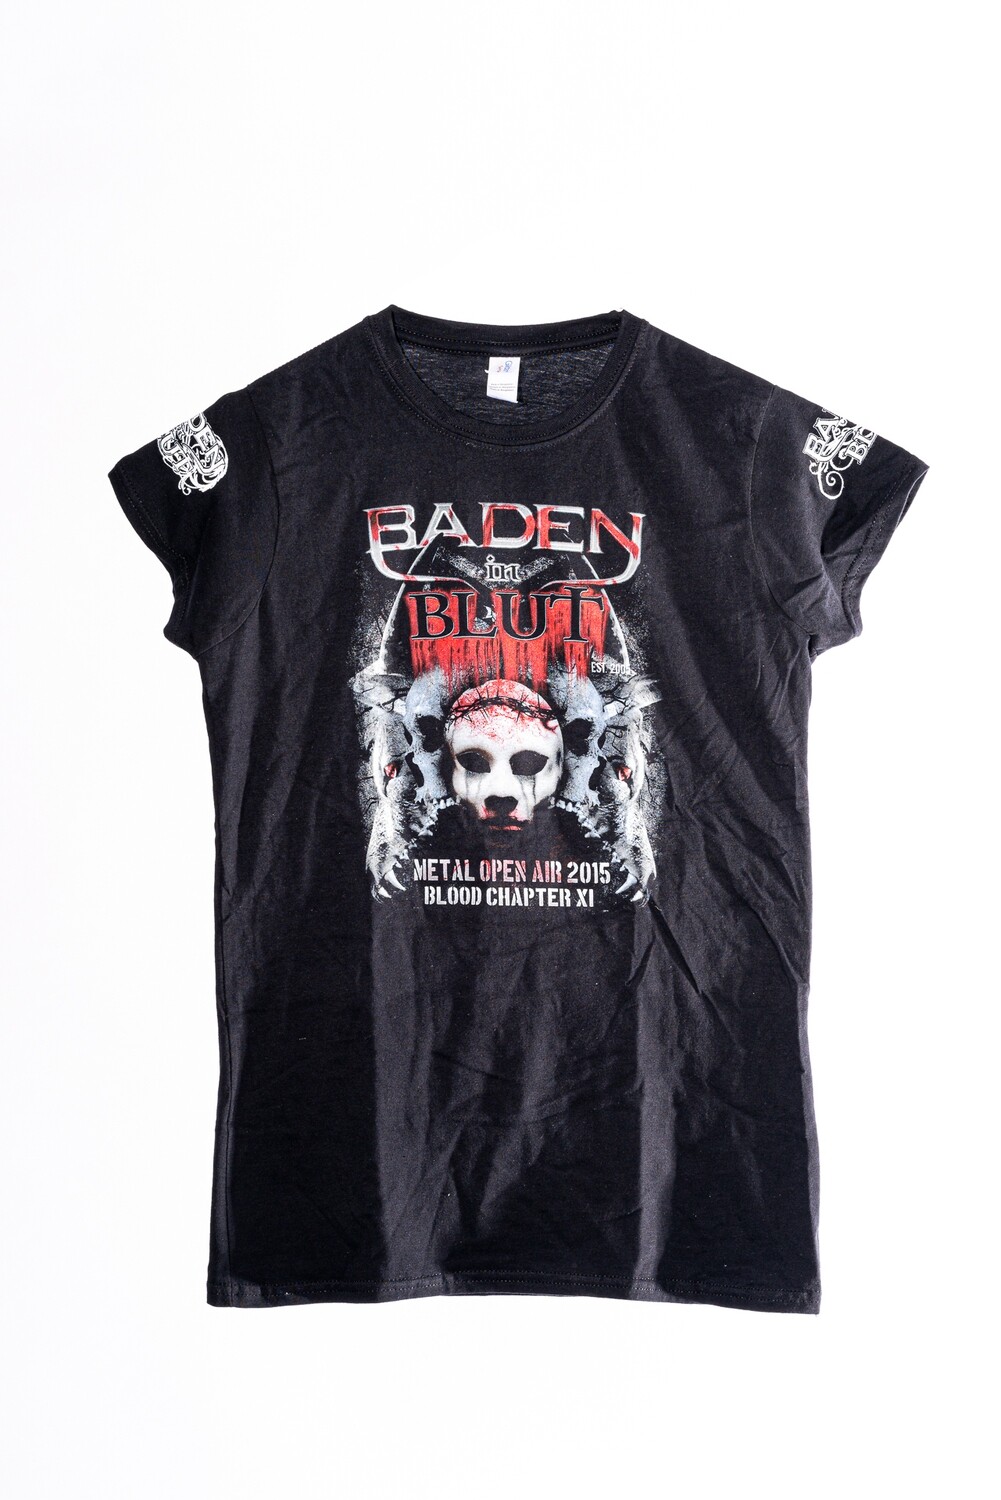 Baden in Blut 2015 Girlie Festival Shirt